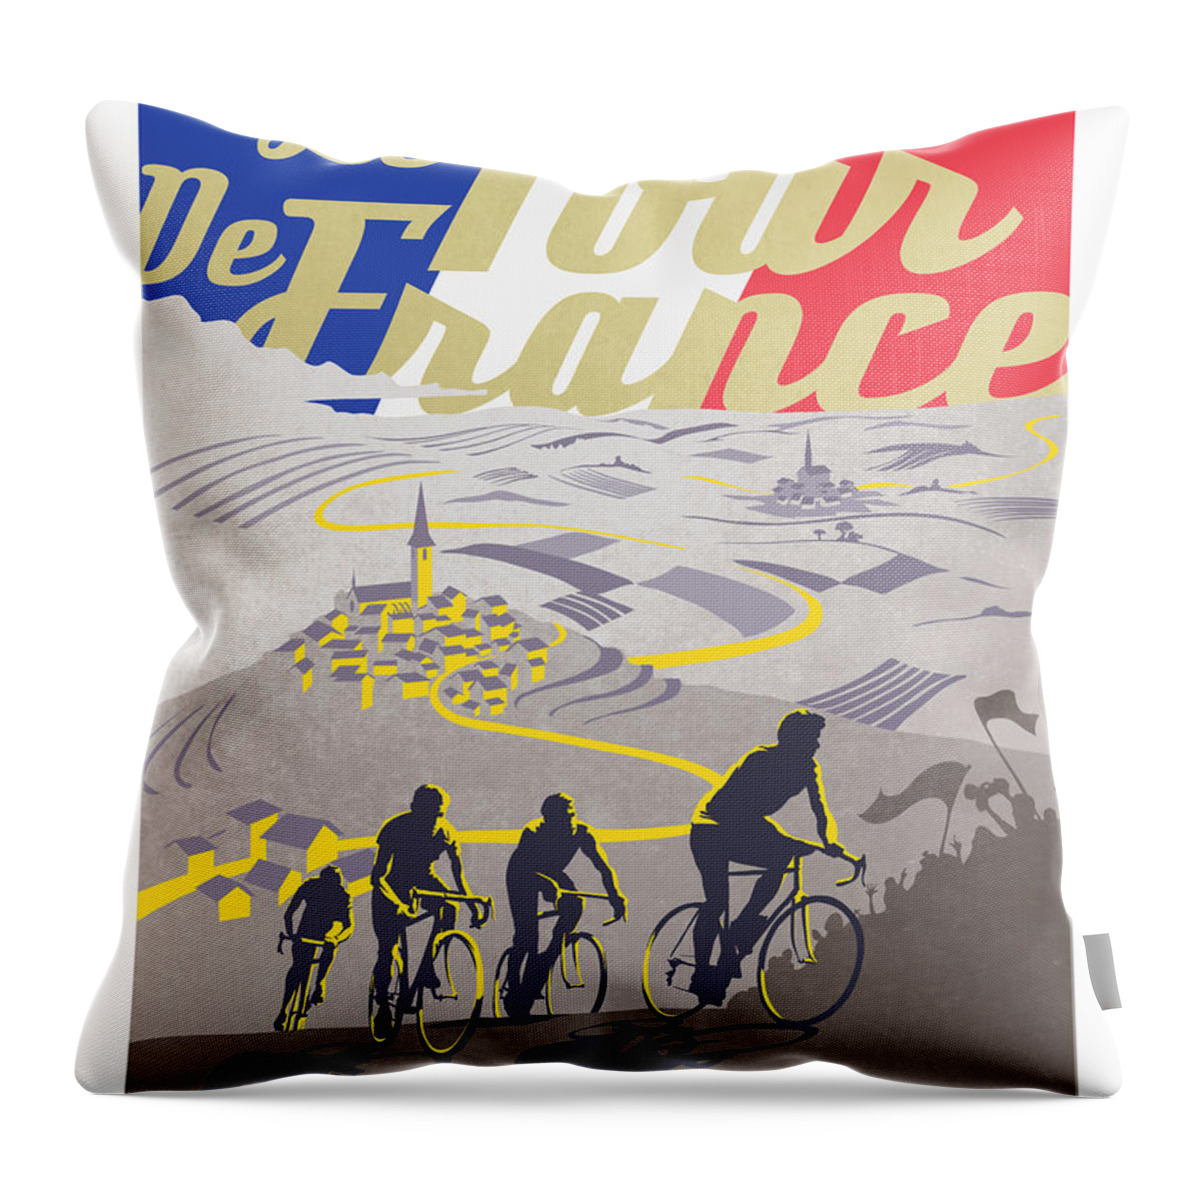 Vintage Tour De France Throw Pillow featuring the painting Retro Tour de France by Sassan Filsoof